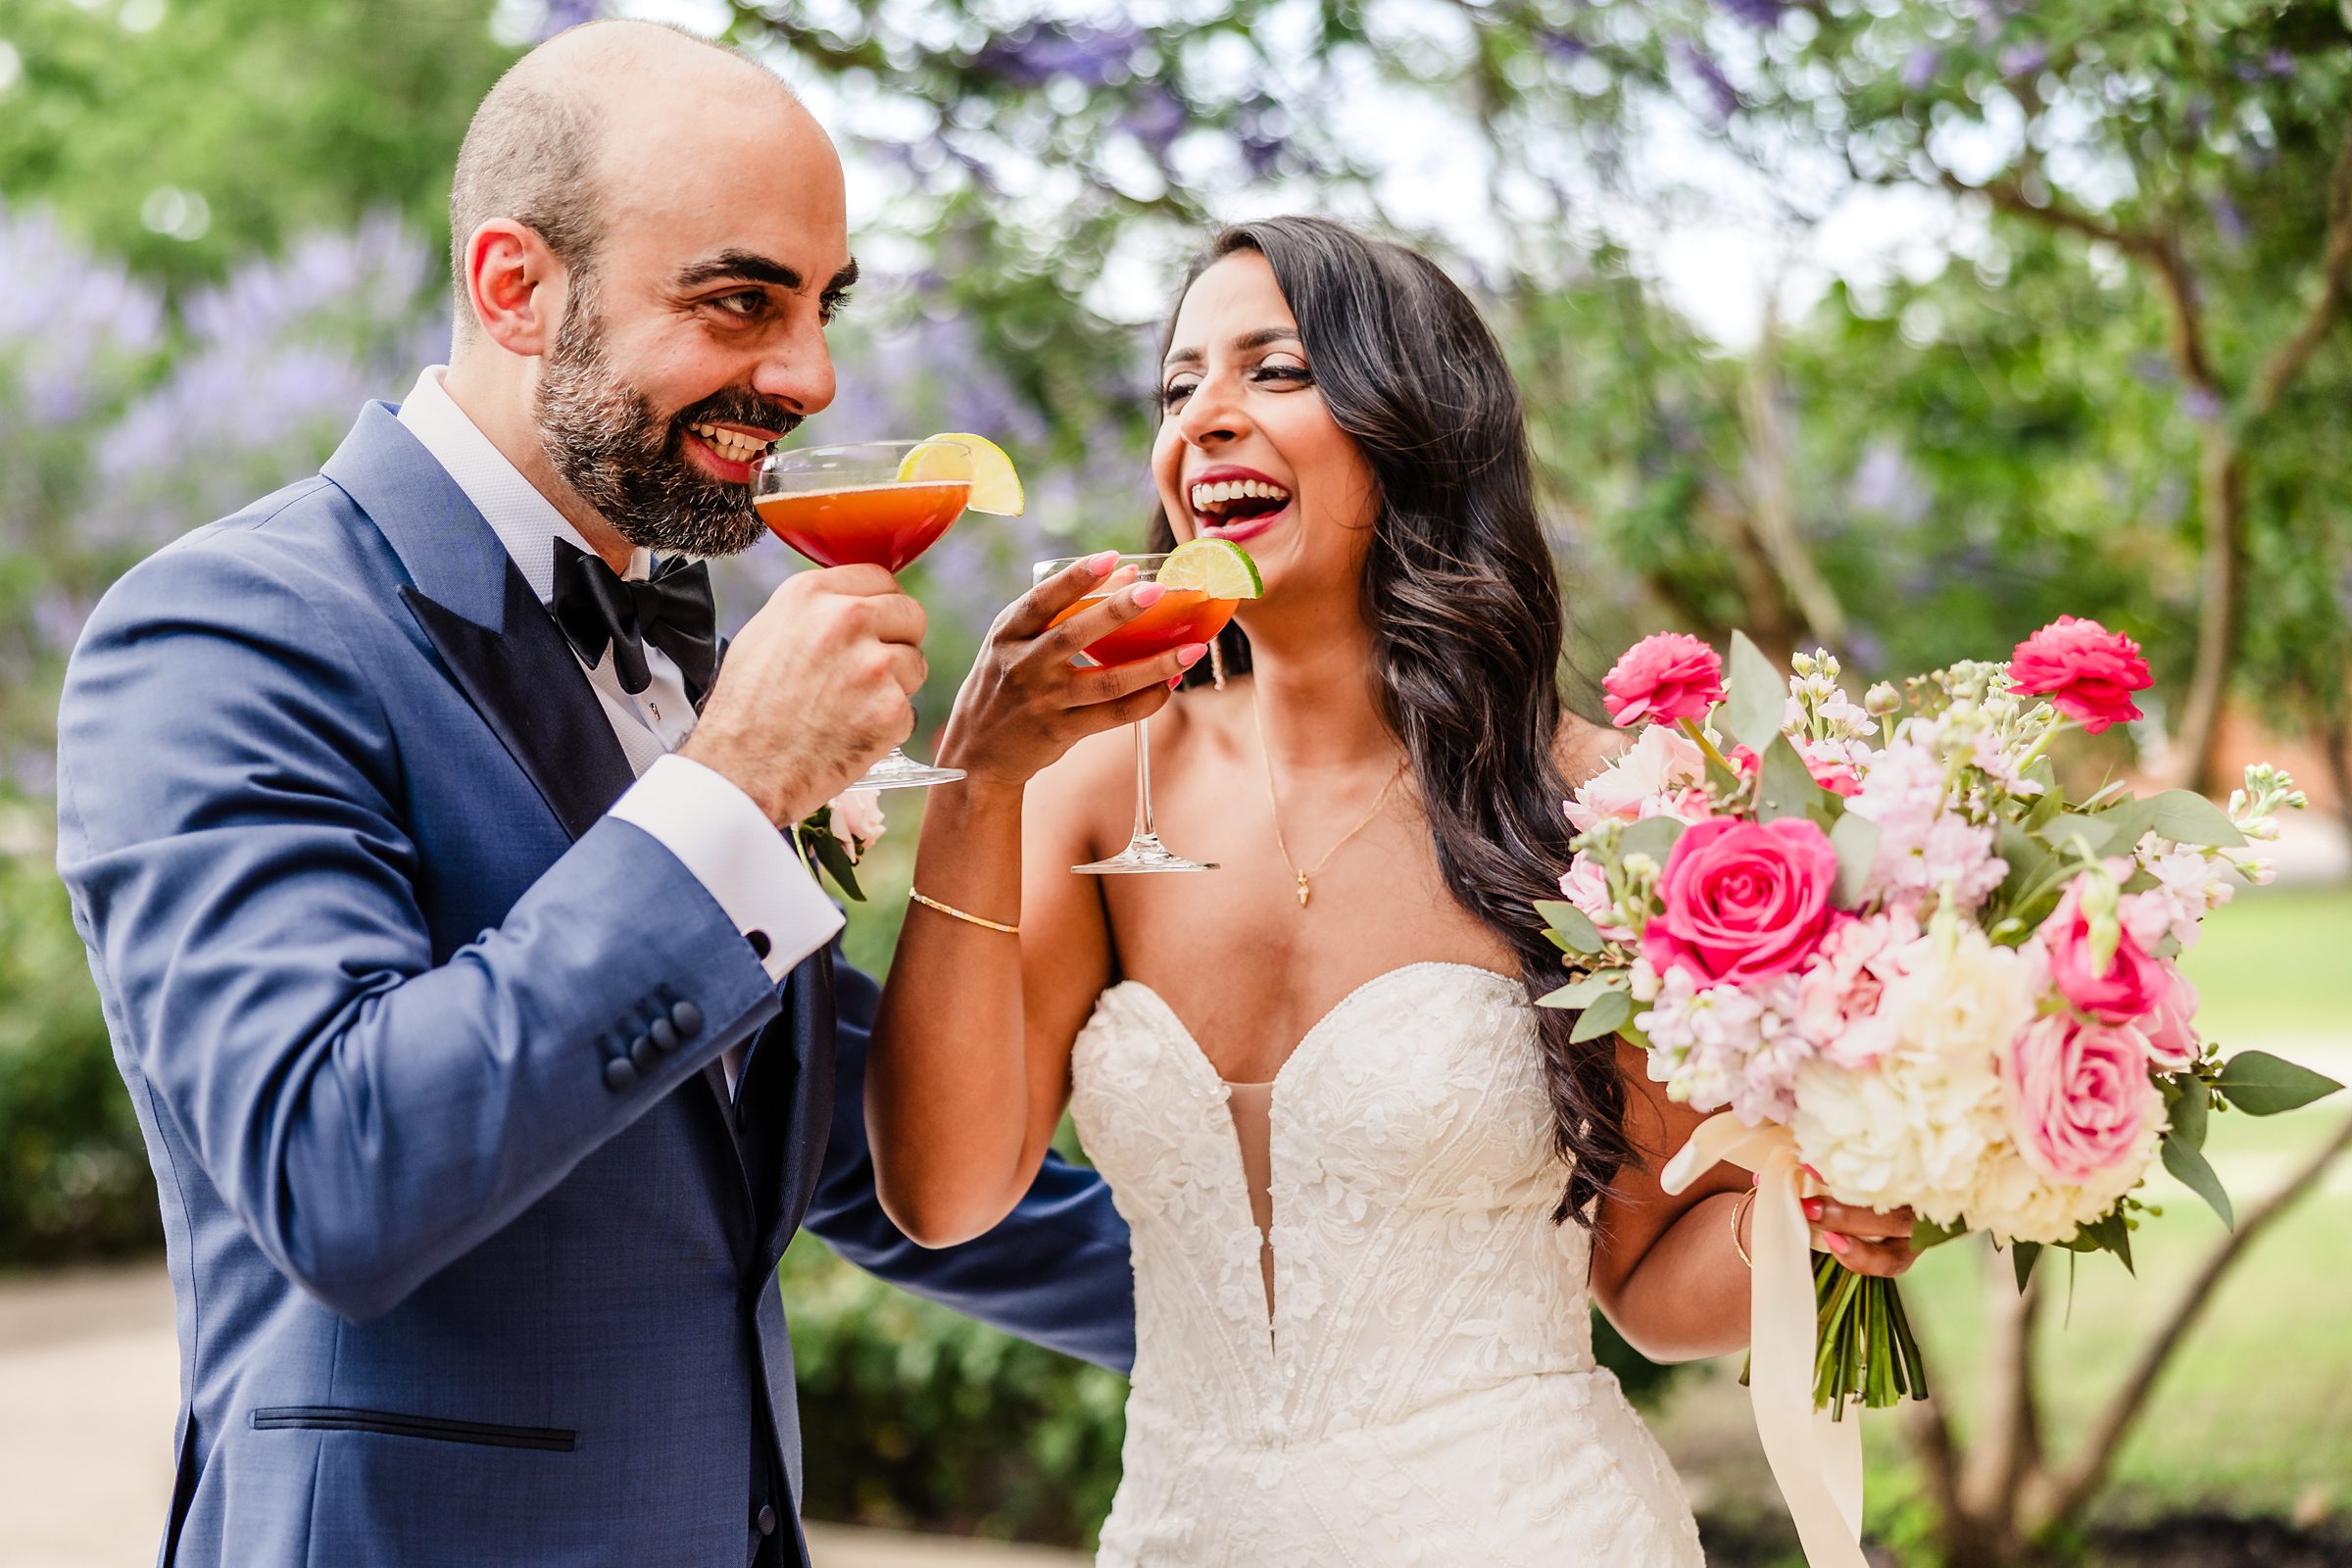 Couple celebrate their wedding during a wedding at Shiraz Garden in Bastrop, Texas.